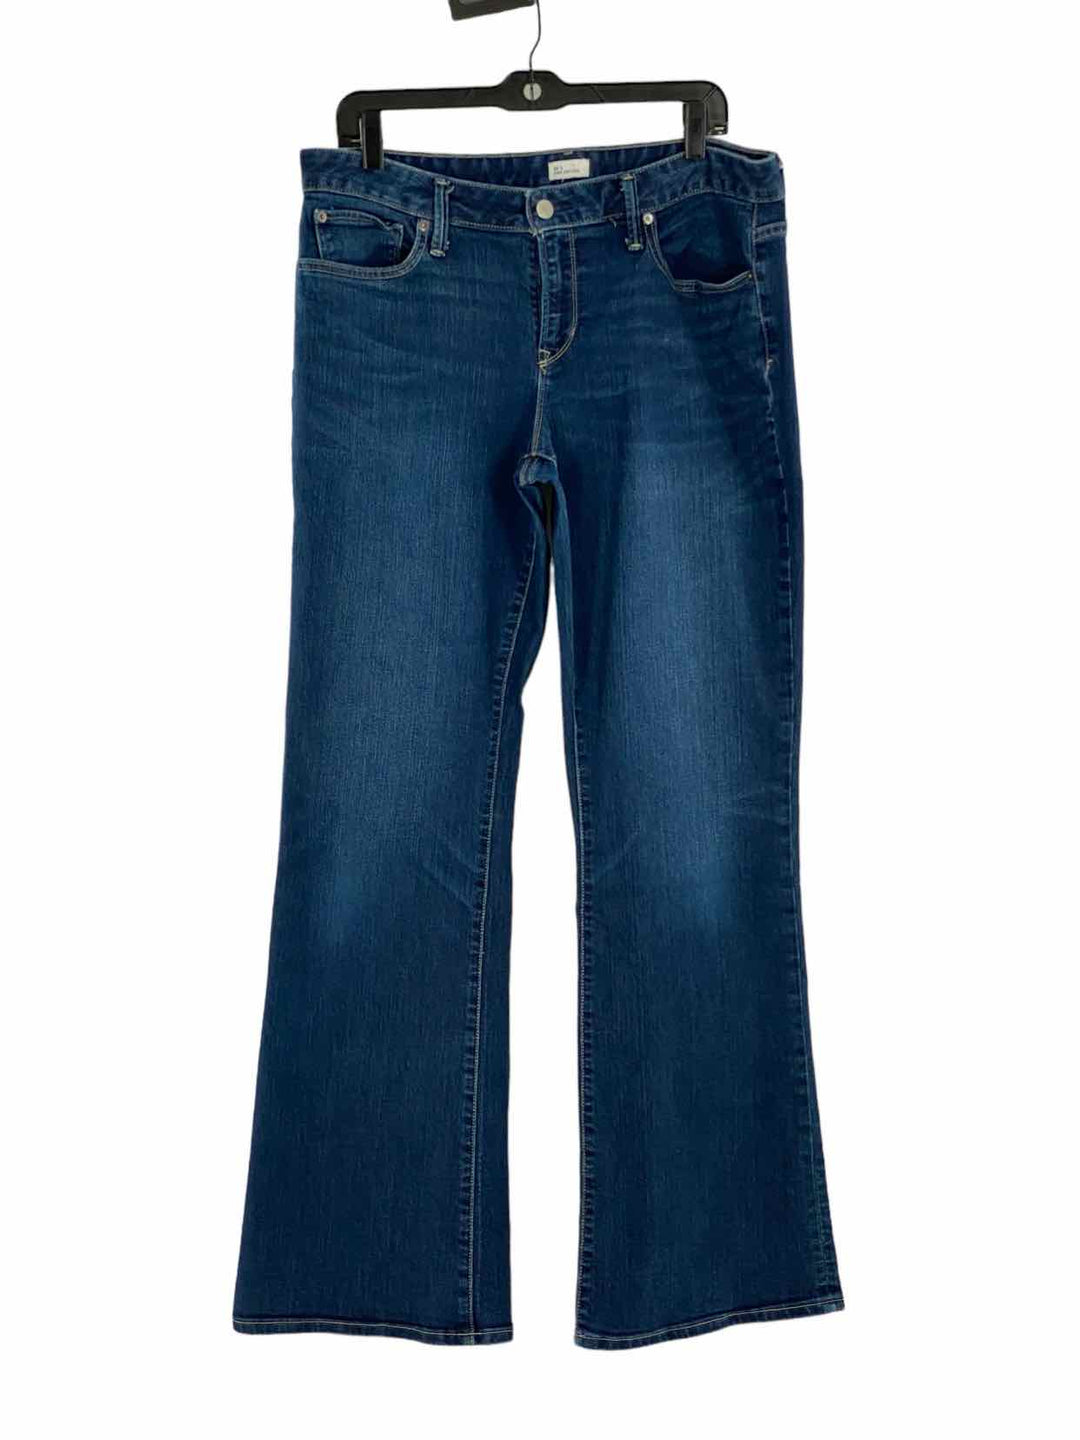 Gap Size 32L Jeans